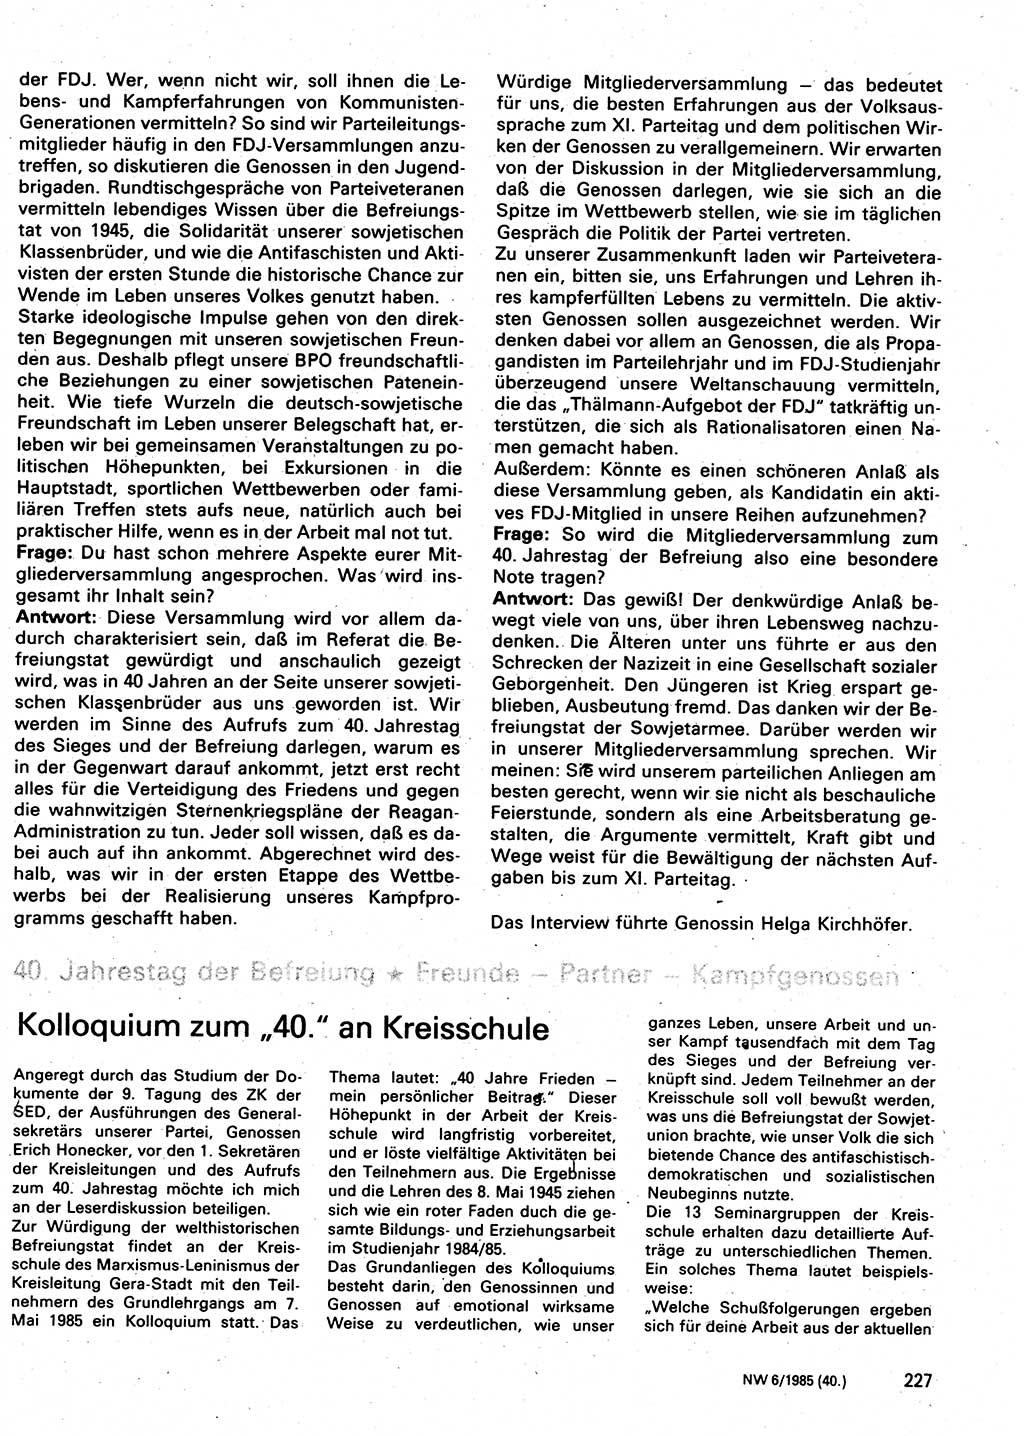 Neuer Weg (NW), Organ des Zentralkomitees (ZK) der SED (Sozialistische Einheitspartei Deutschlands) für Fragen des Parteilebens, 40. Jahrgang [Deutsche Demokratische Republik (DDR)] 1985, Seite 227 (NW ZK SED DDR 1985, S. 227)